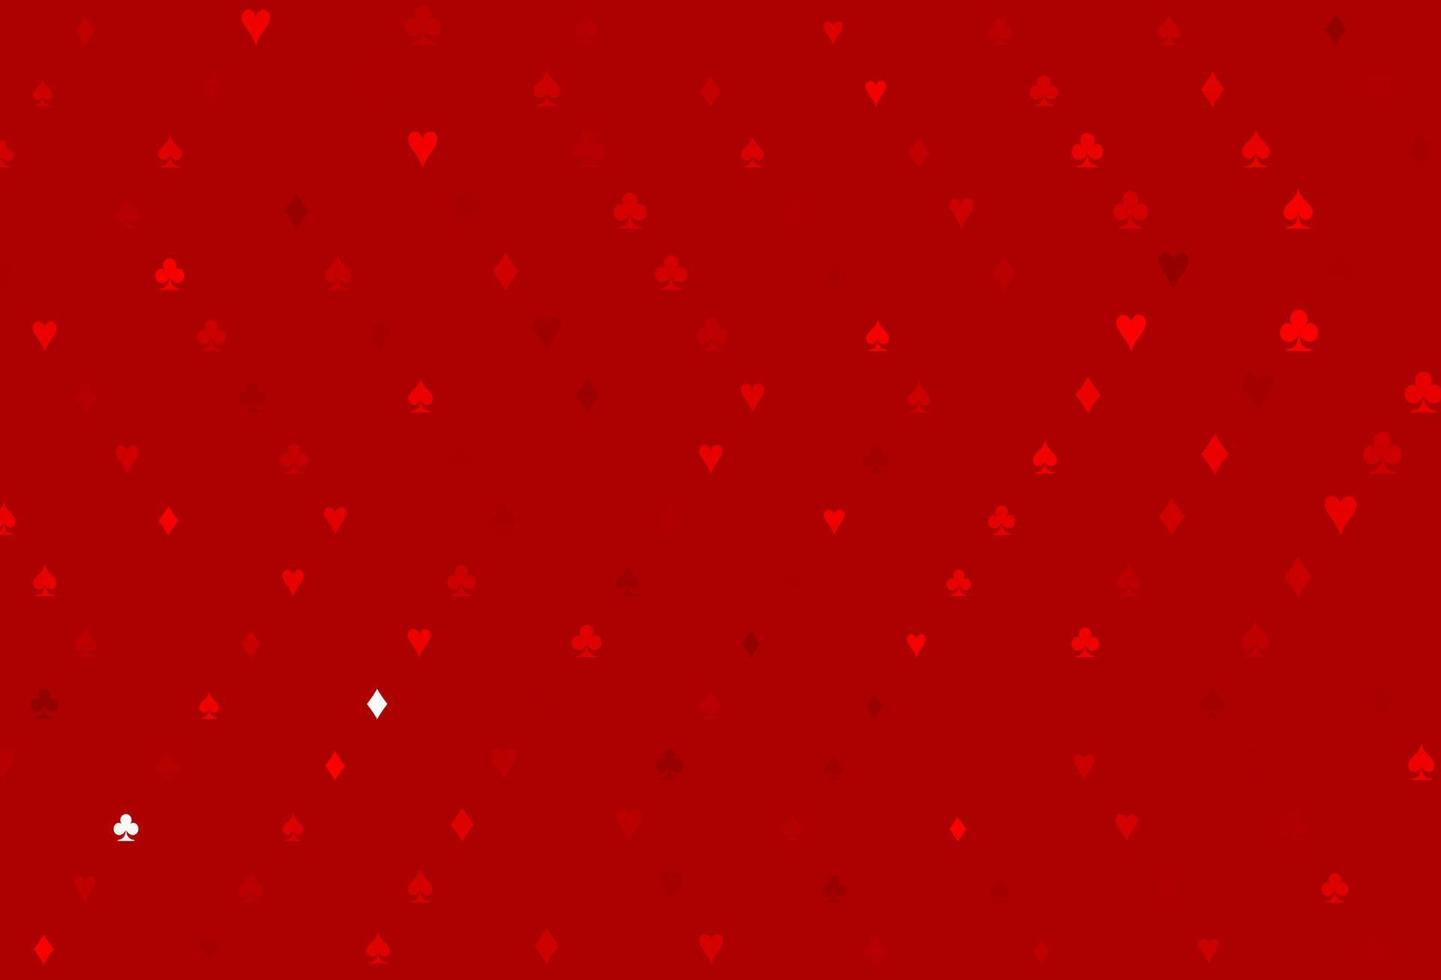 textura vector vermelho claro com cartas de jogar.